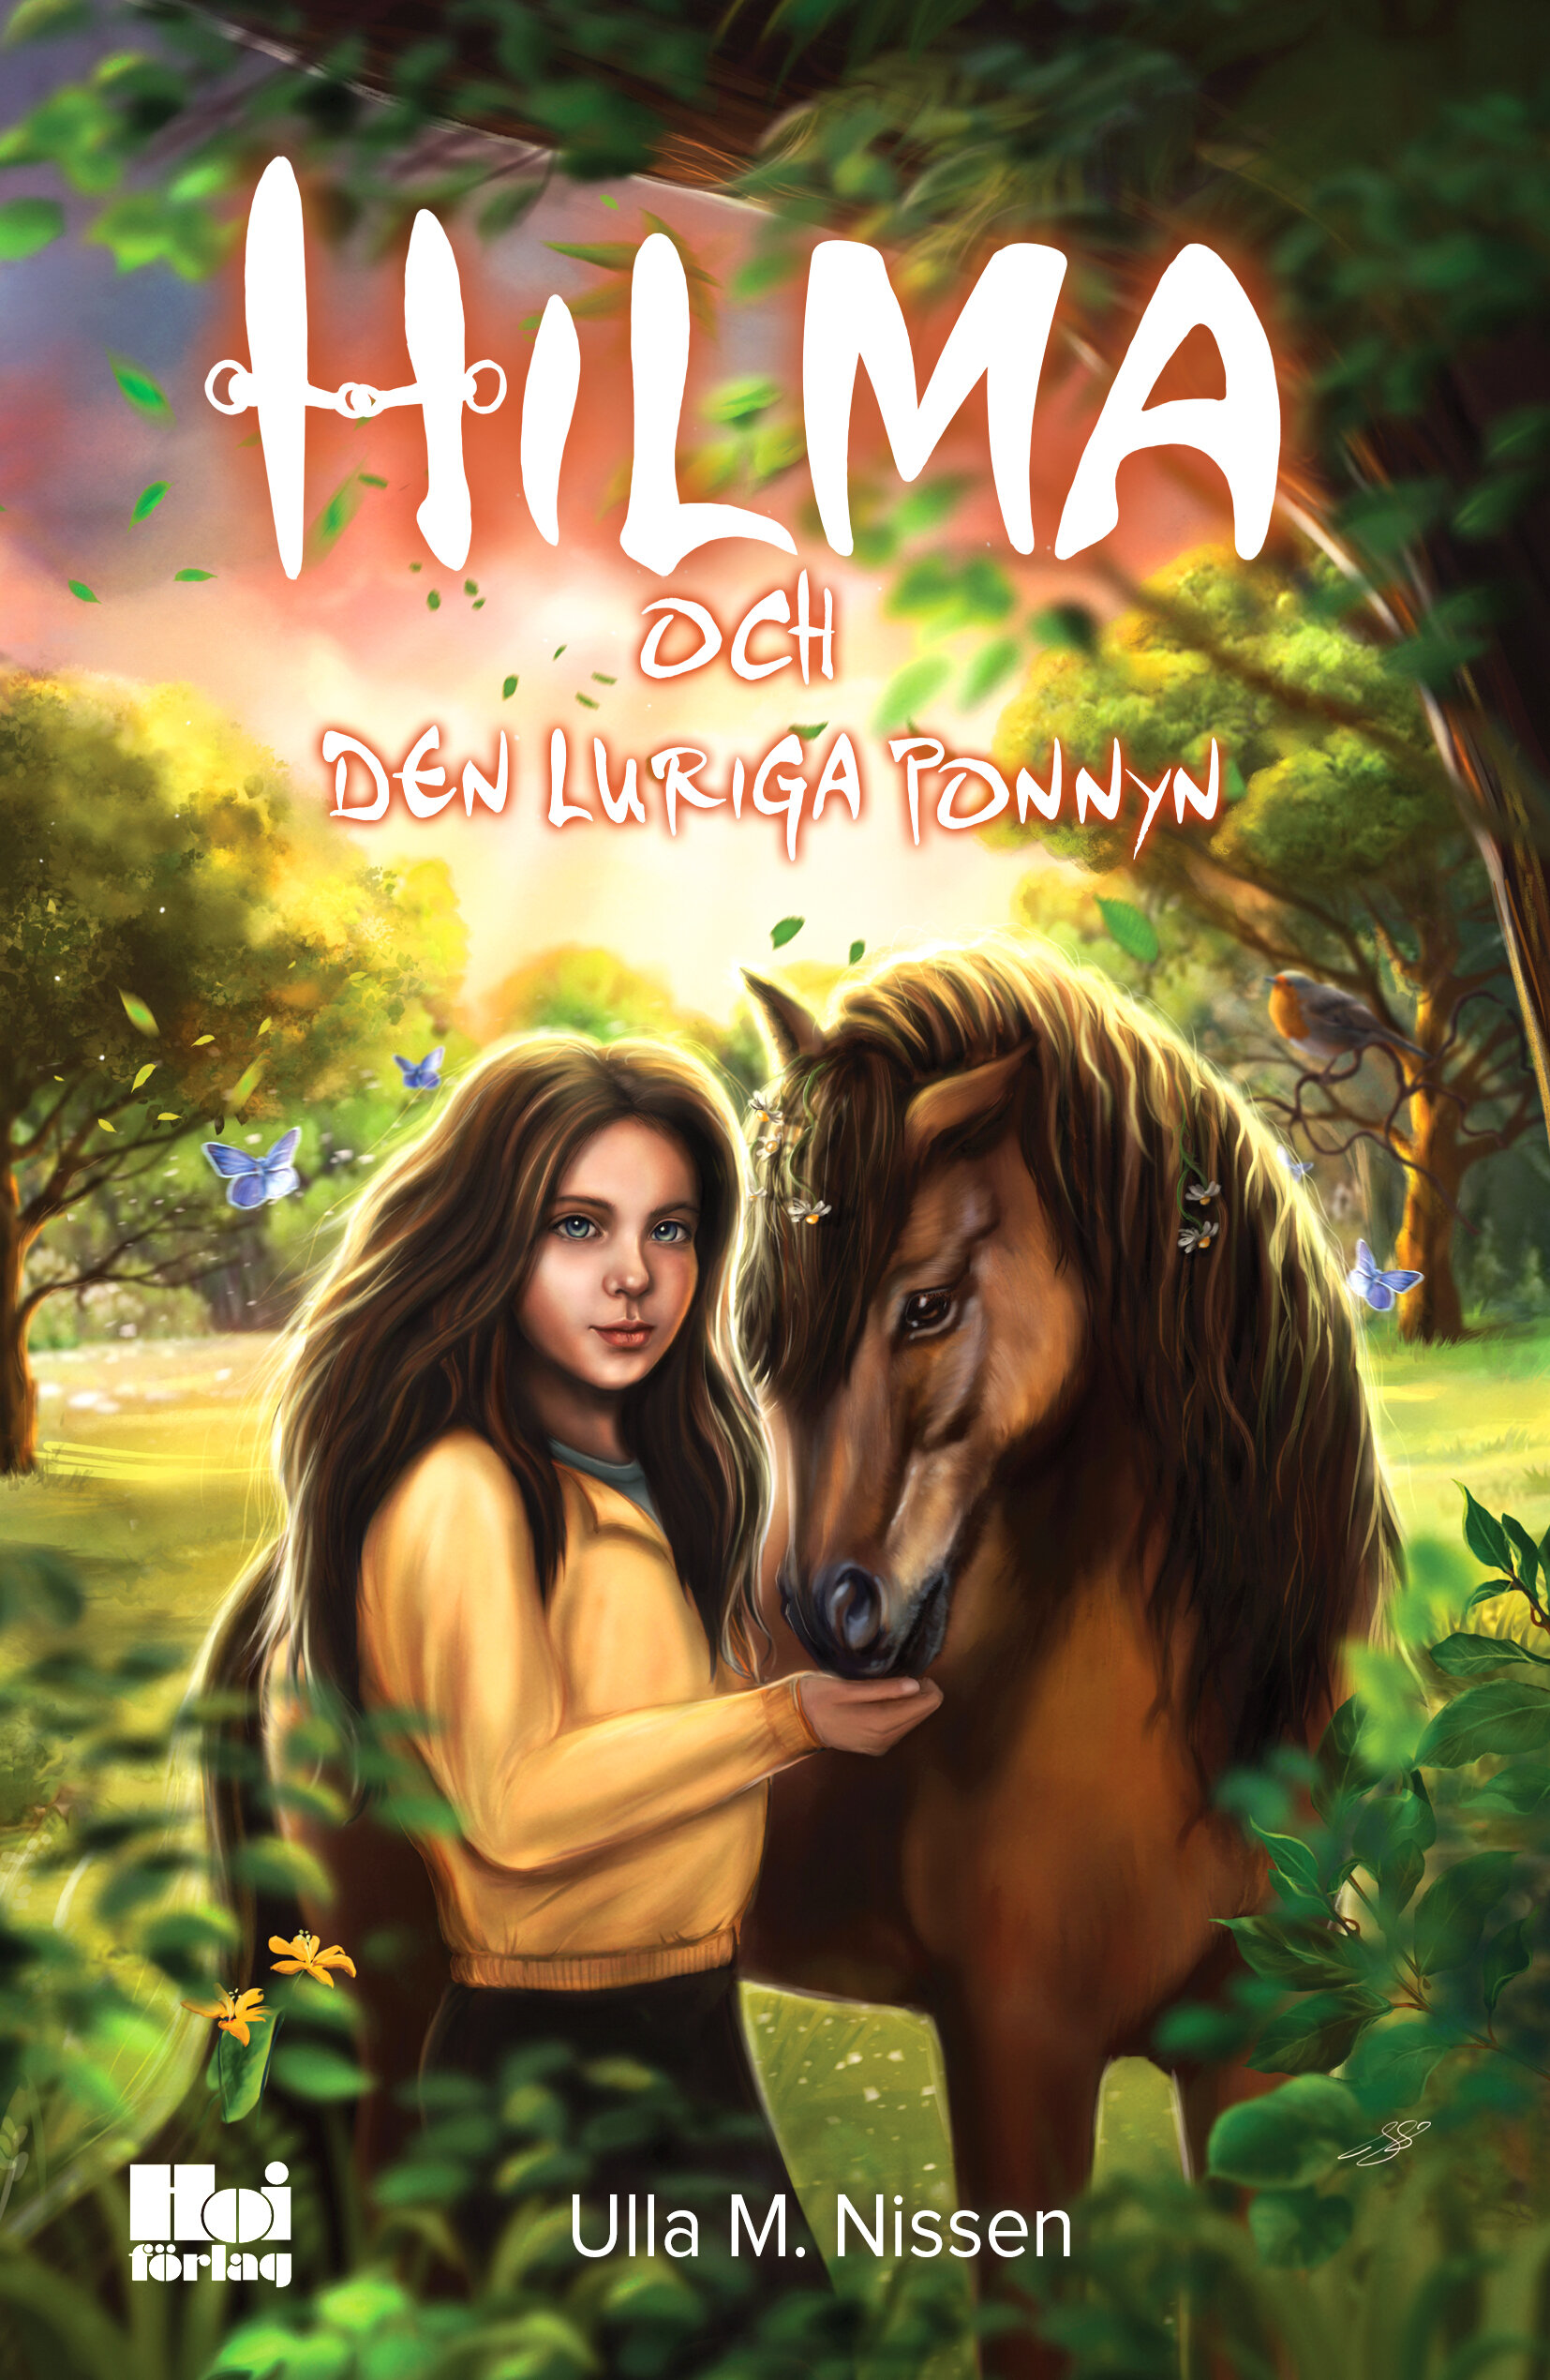 HILMA1_Hilma och den luriga ponnyn_omslag WEBB.jpg